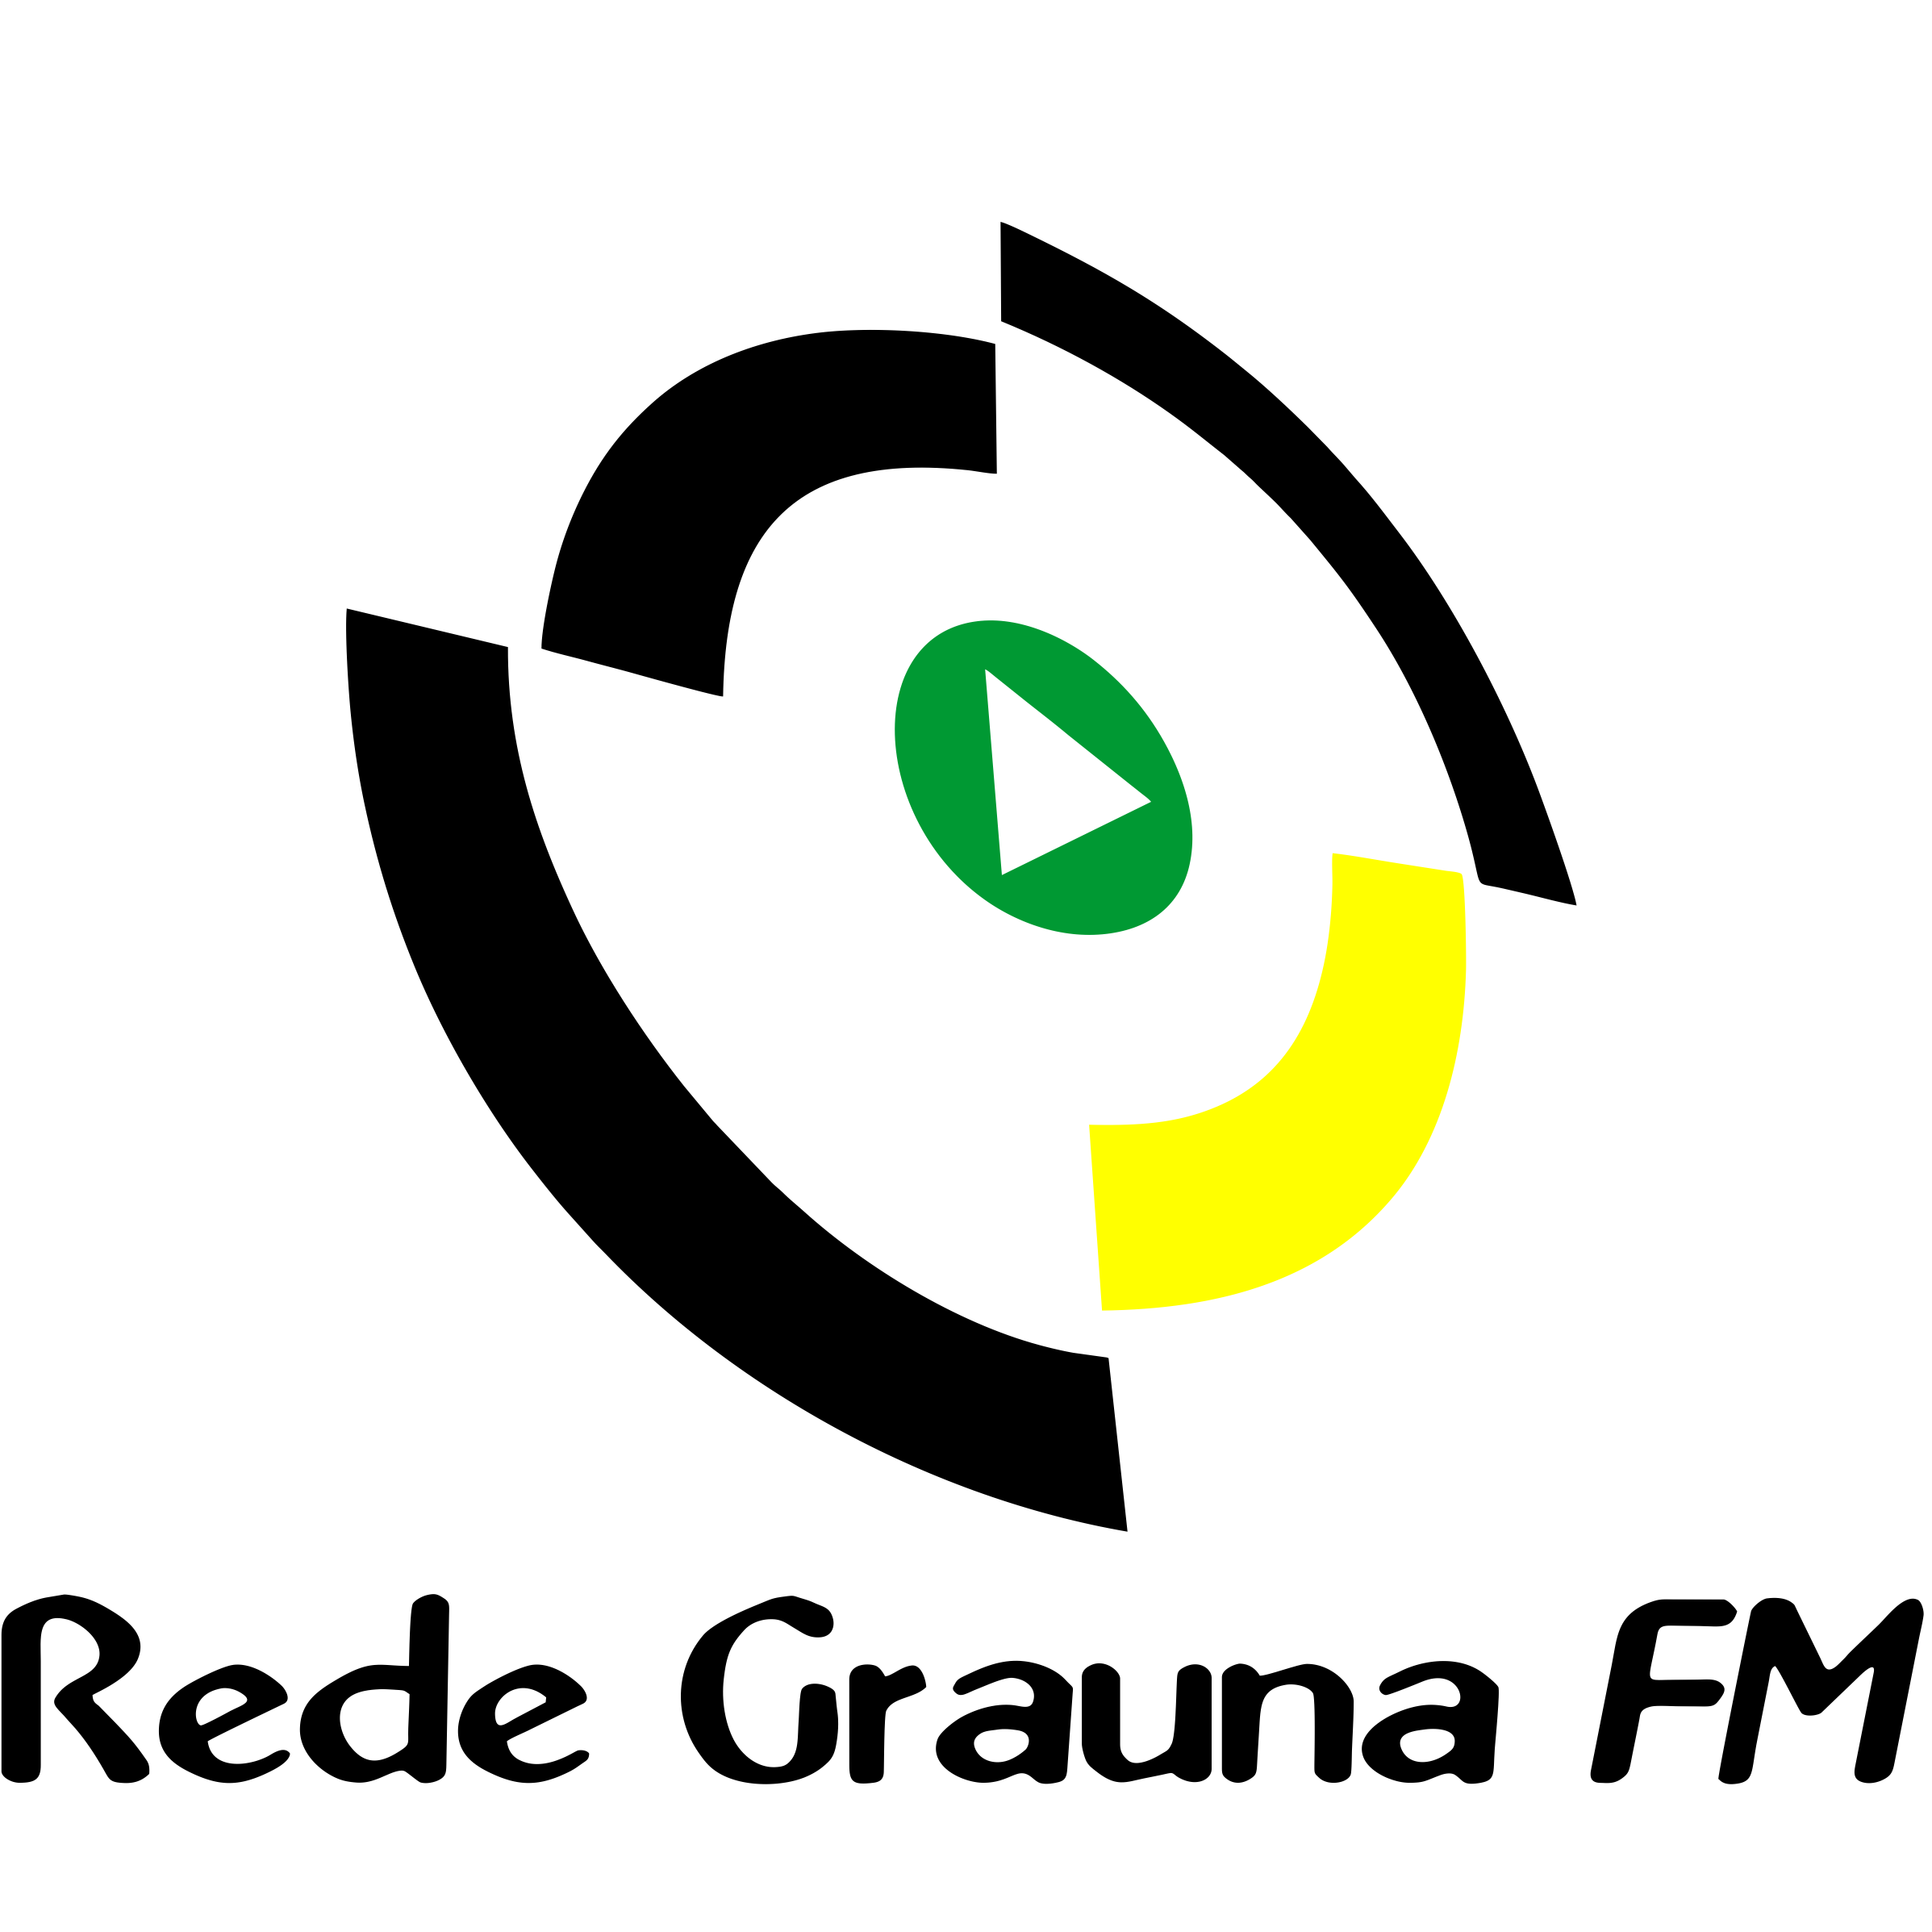 Rede Graúna FM